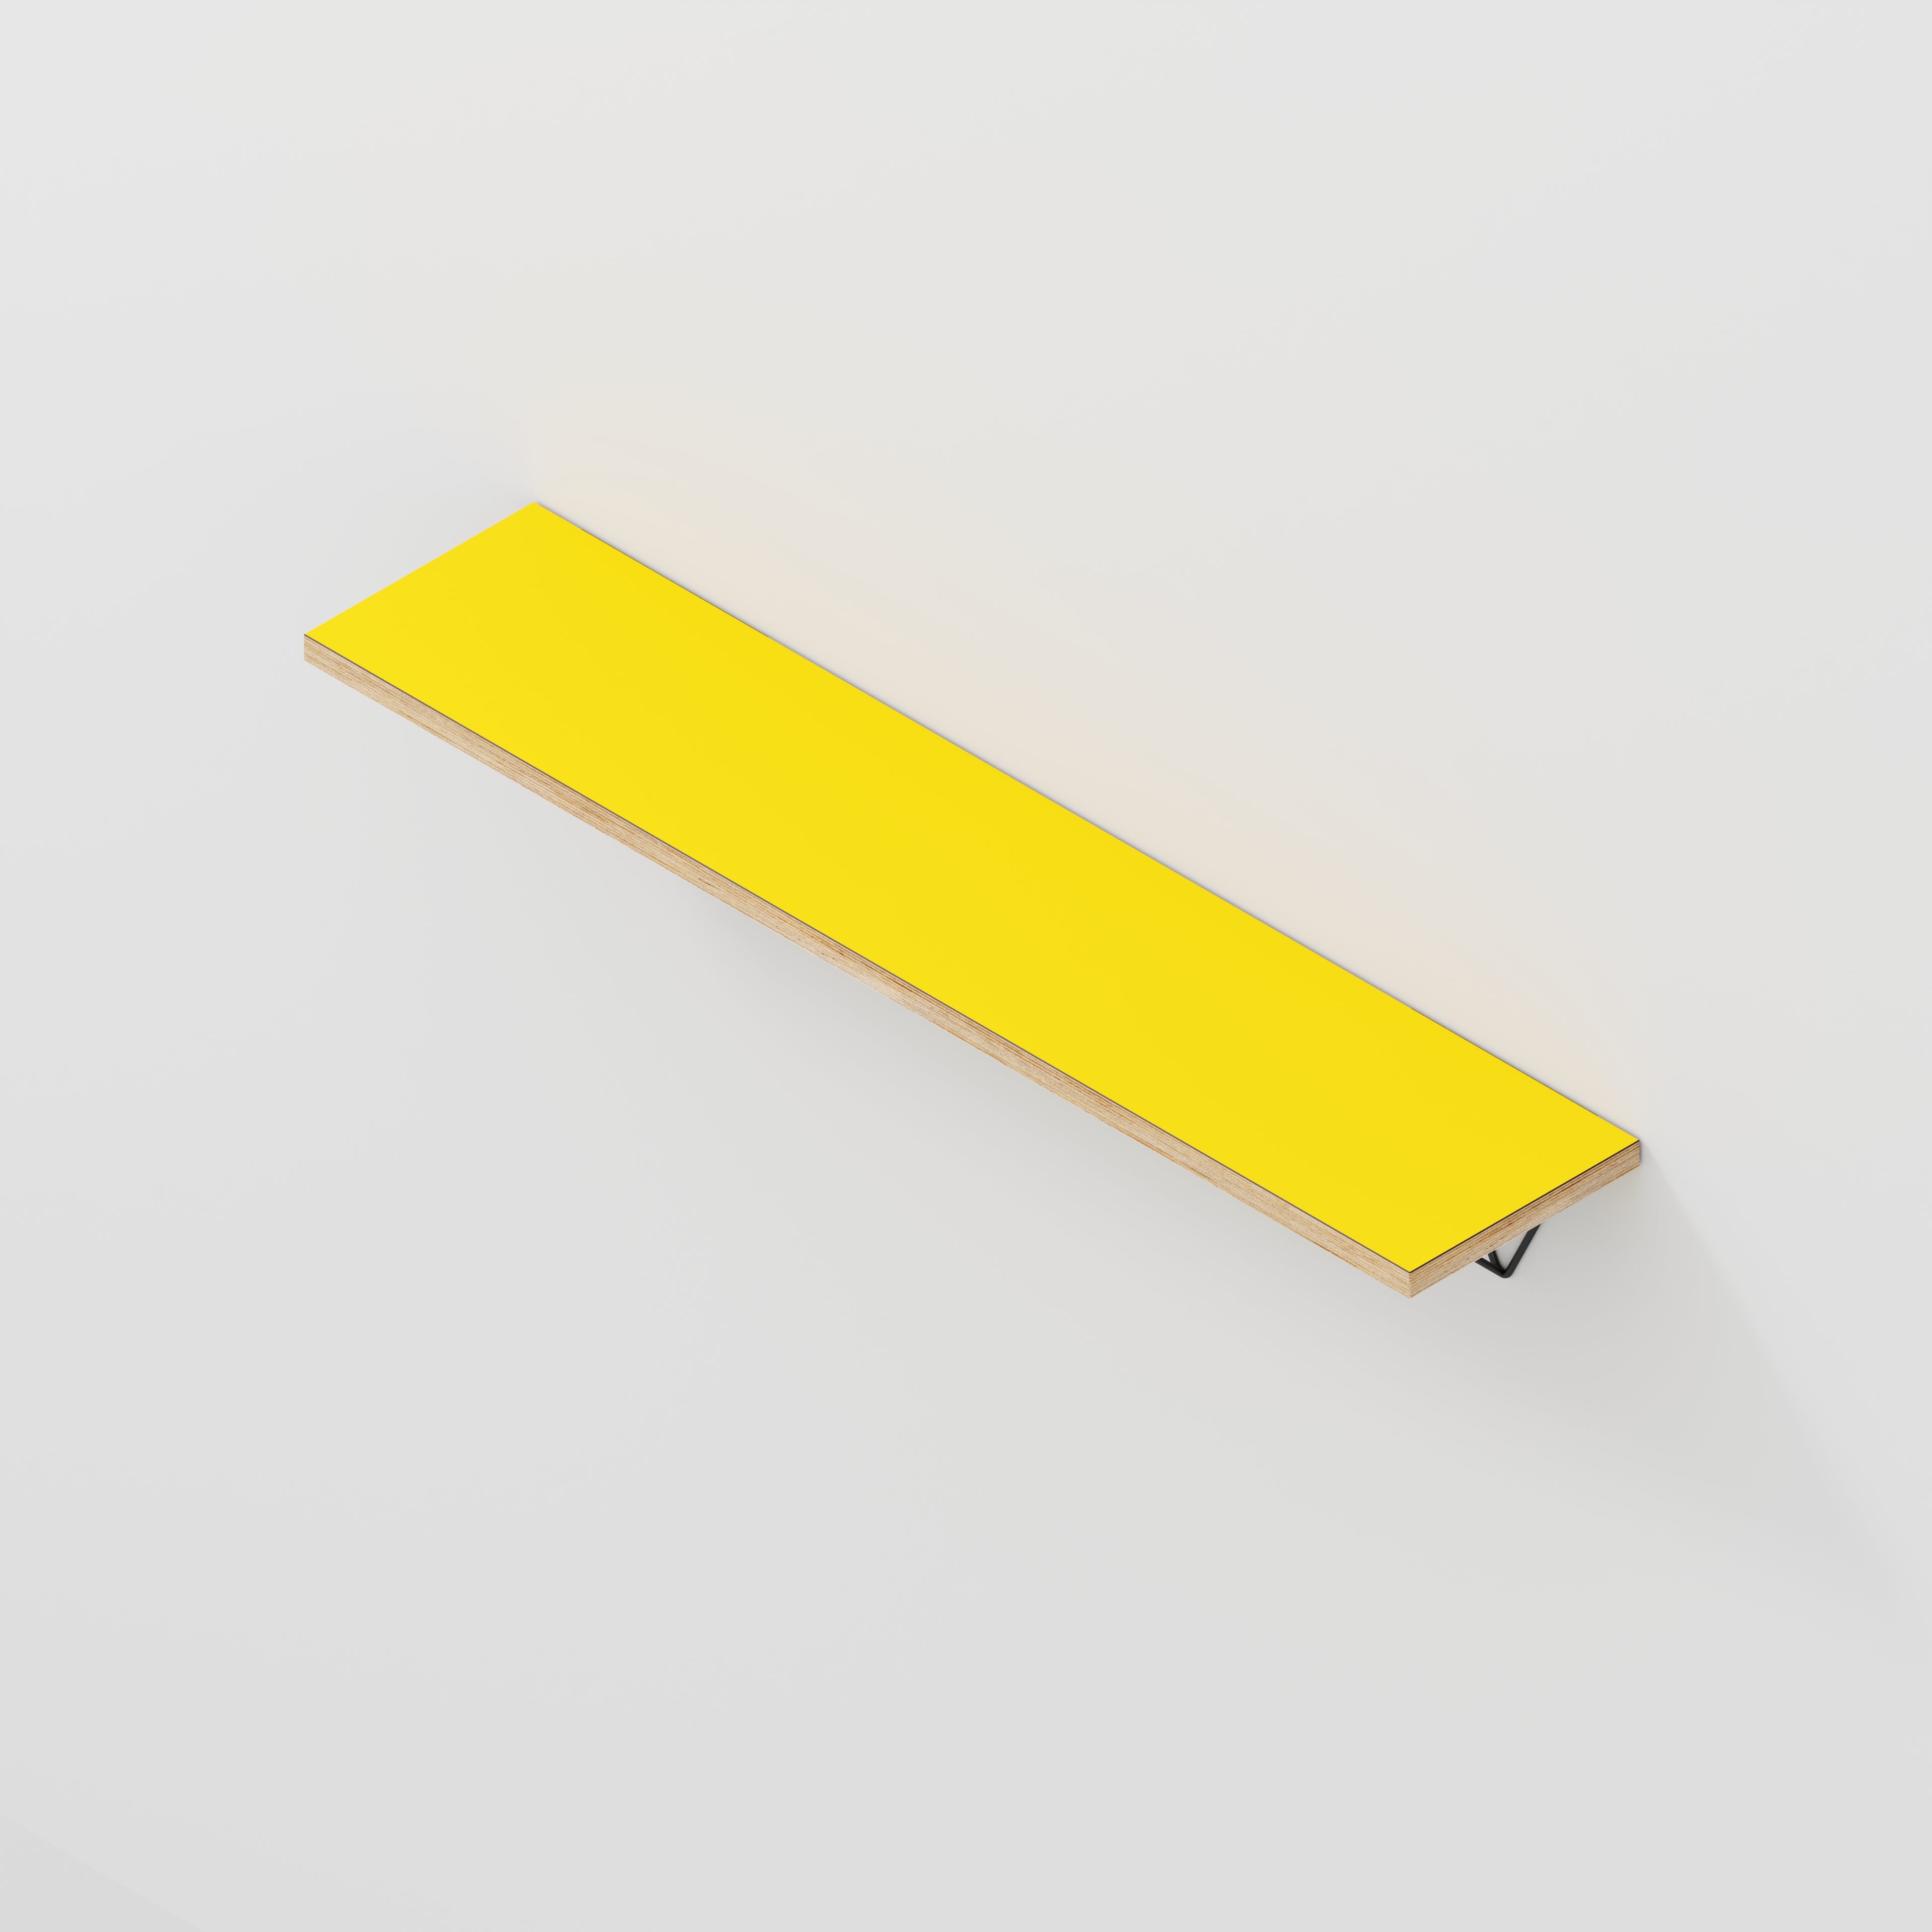 Wall Shelf with Prism Brackets - Formica Chrome Yellow - 1200(w) x 250(d)